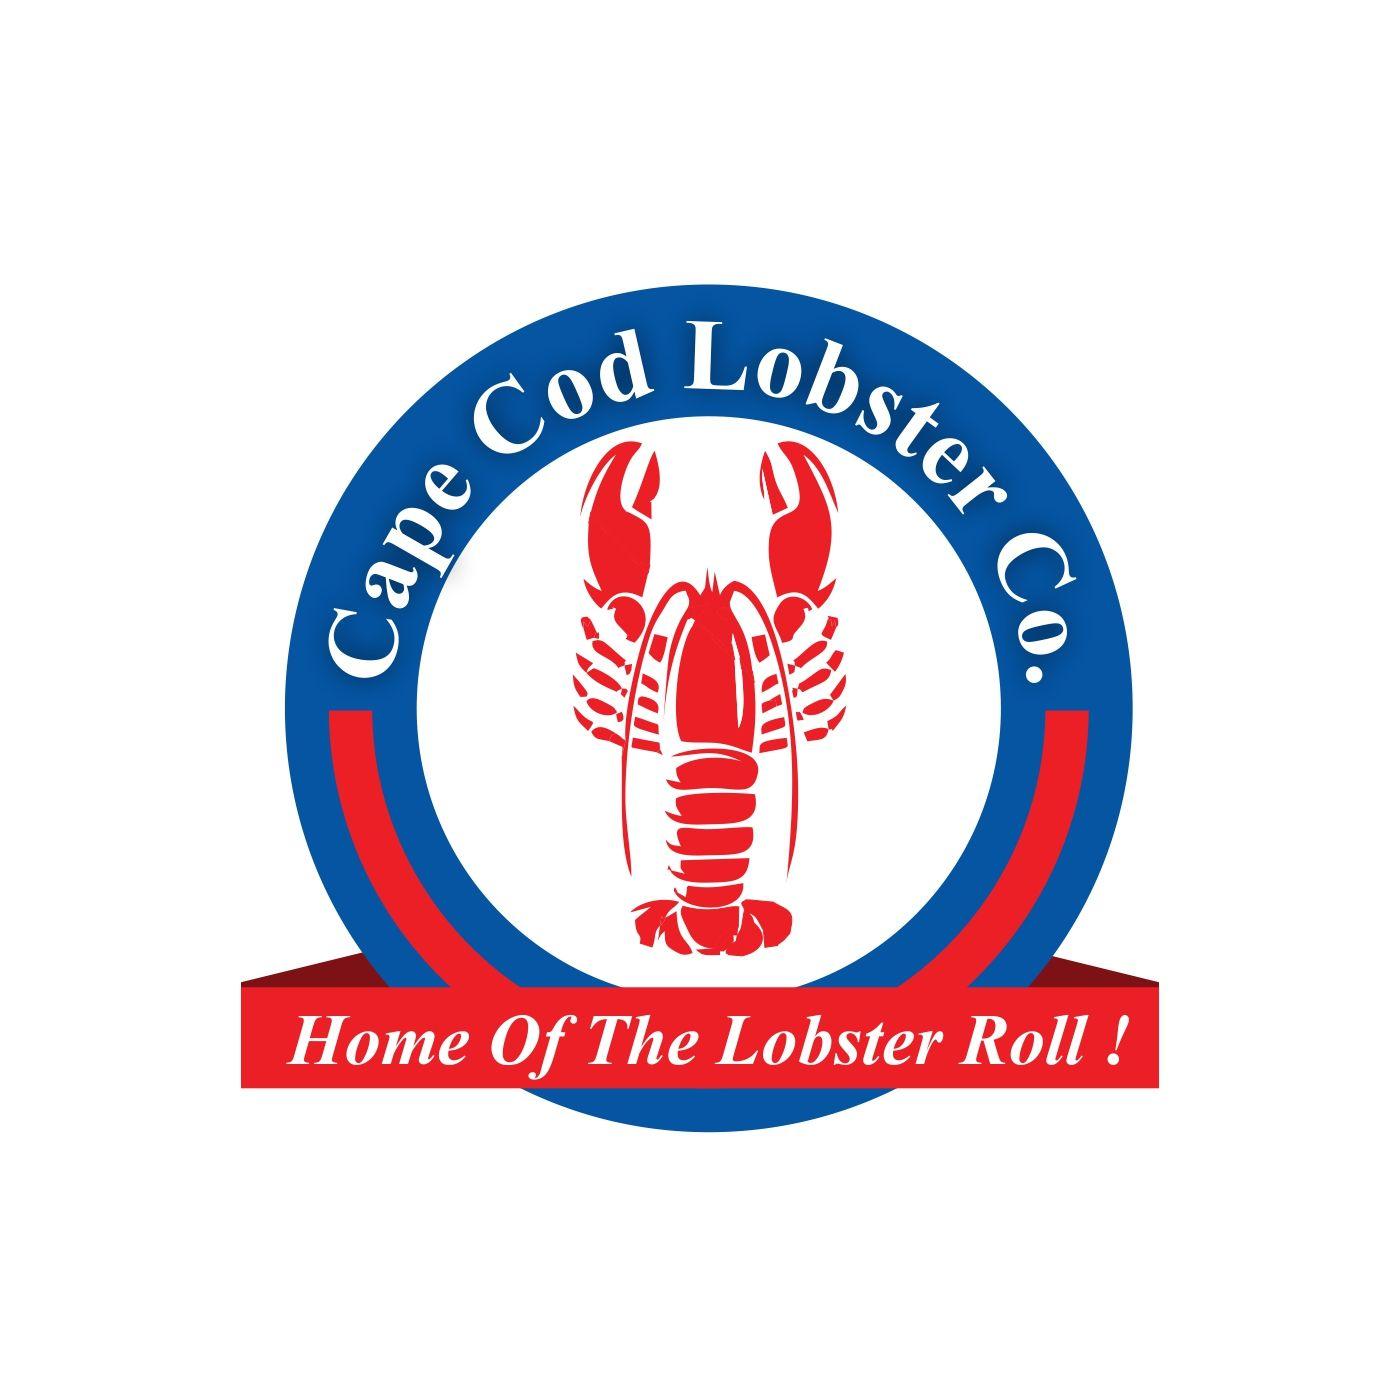 Cod Logo - Upmarket, Elegant, Seafood Restaurant Logo Design for cape cod